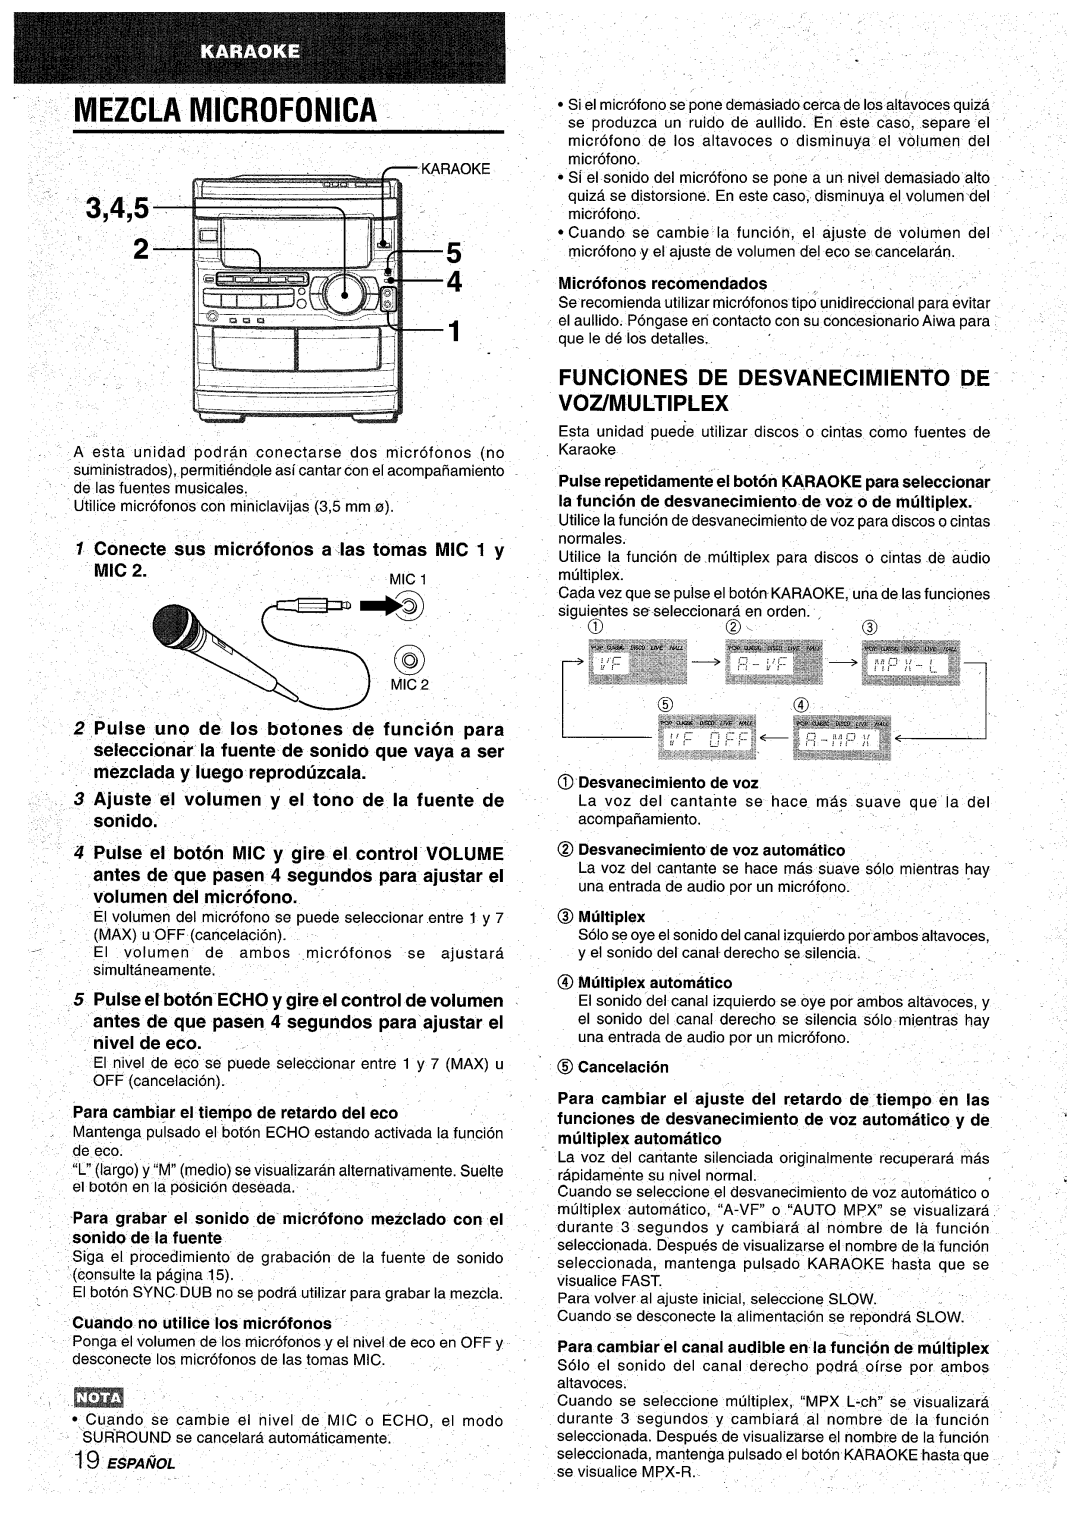 Aiwa CX-NA92 manual Mezcla Microfonica, fb 3,4,5, FUNClONES DE DESVANECIMIENTO DE VOZ/MULTIPLEX, Pulse el boton, de volumen 